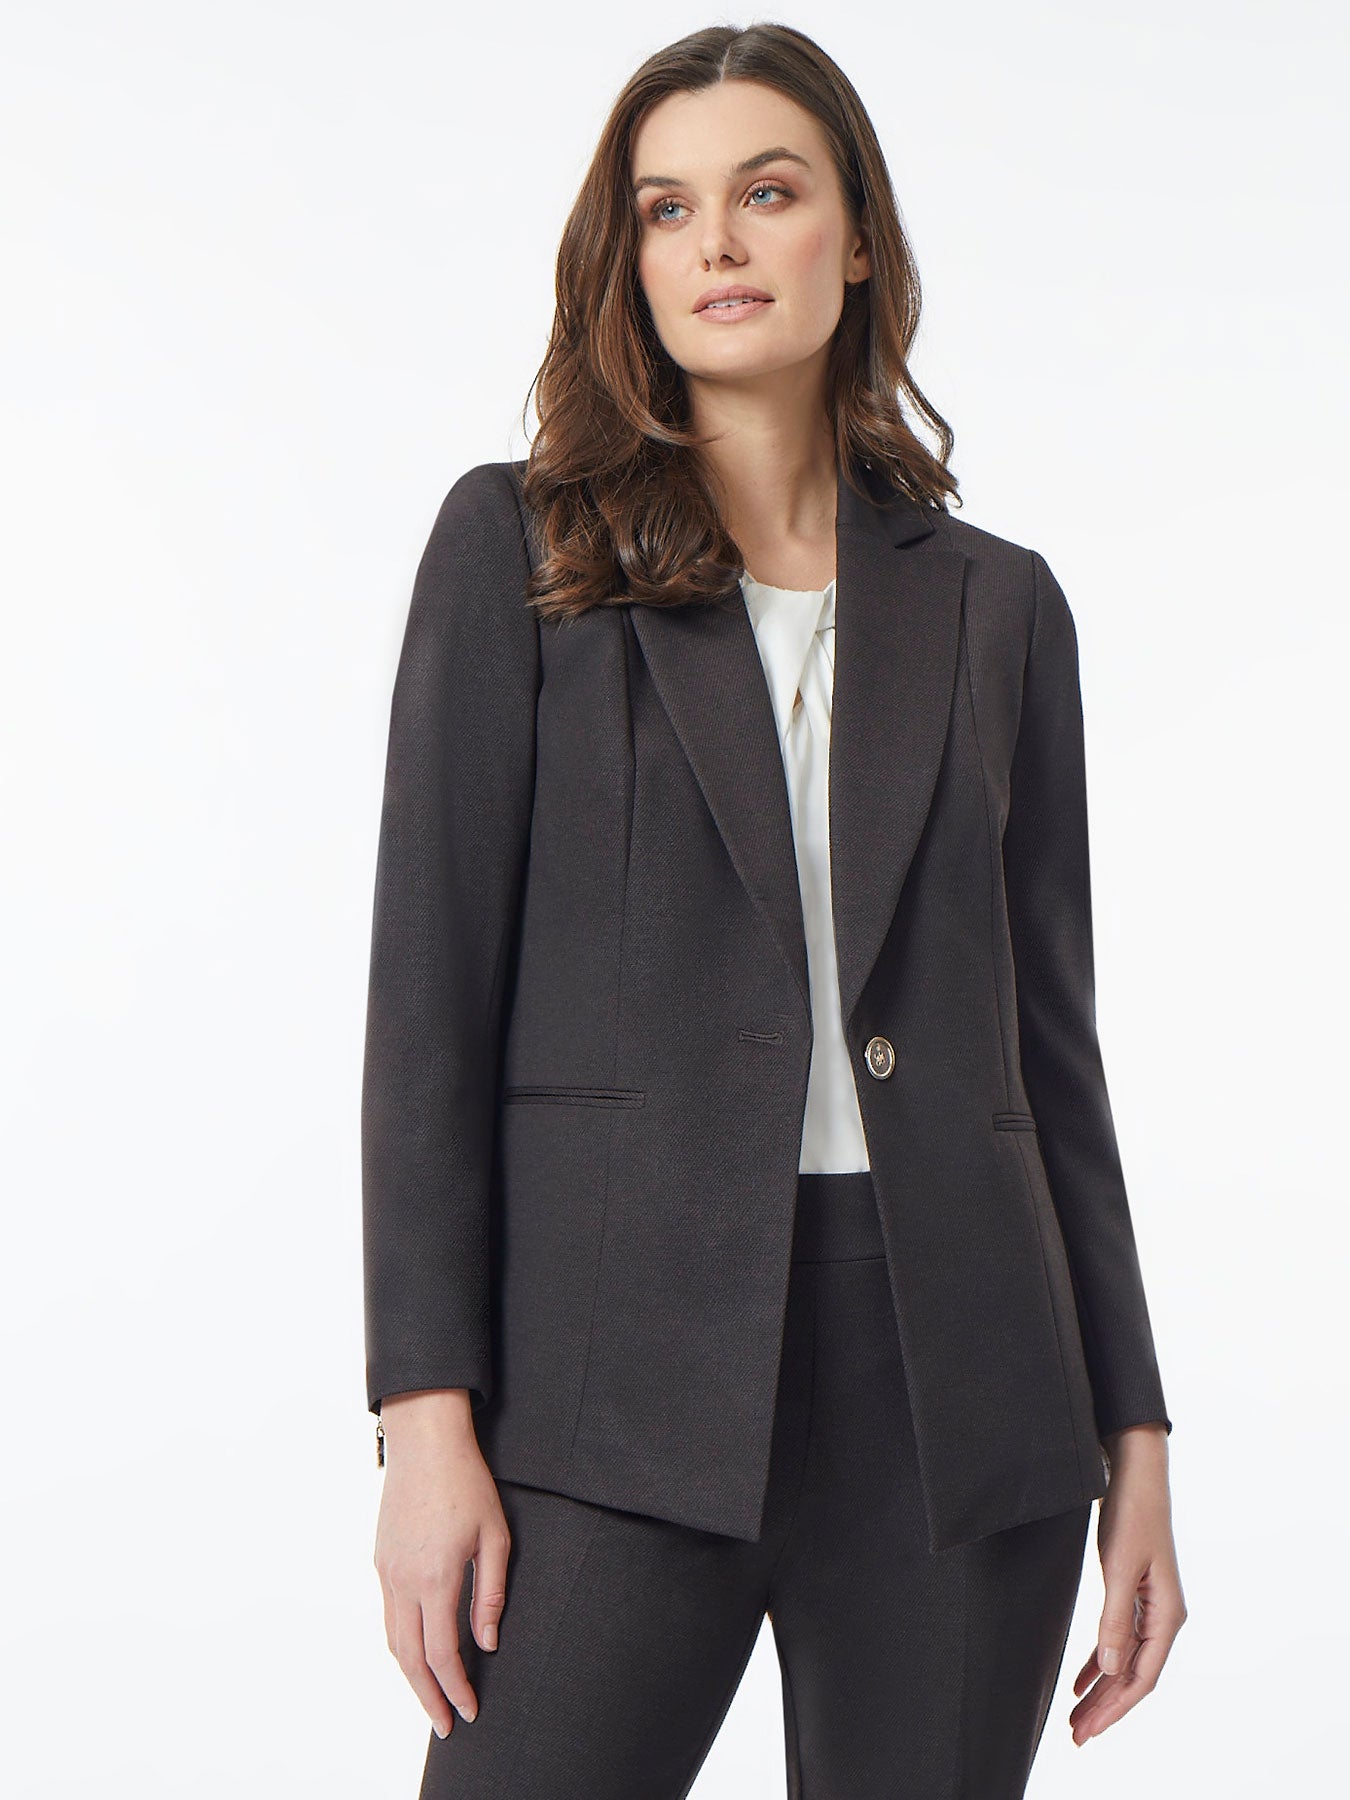 Women's Jackets on Sale - Tweed Jacket